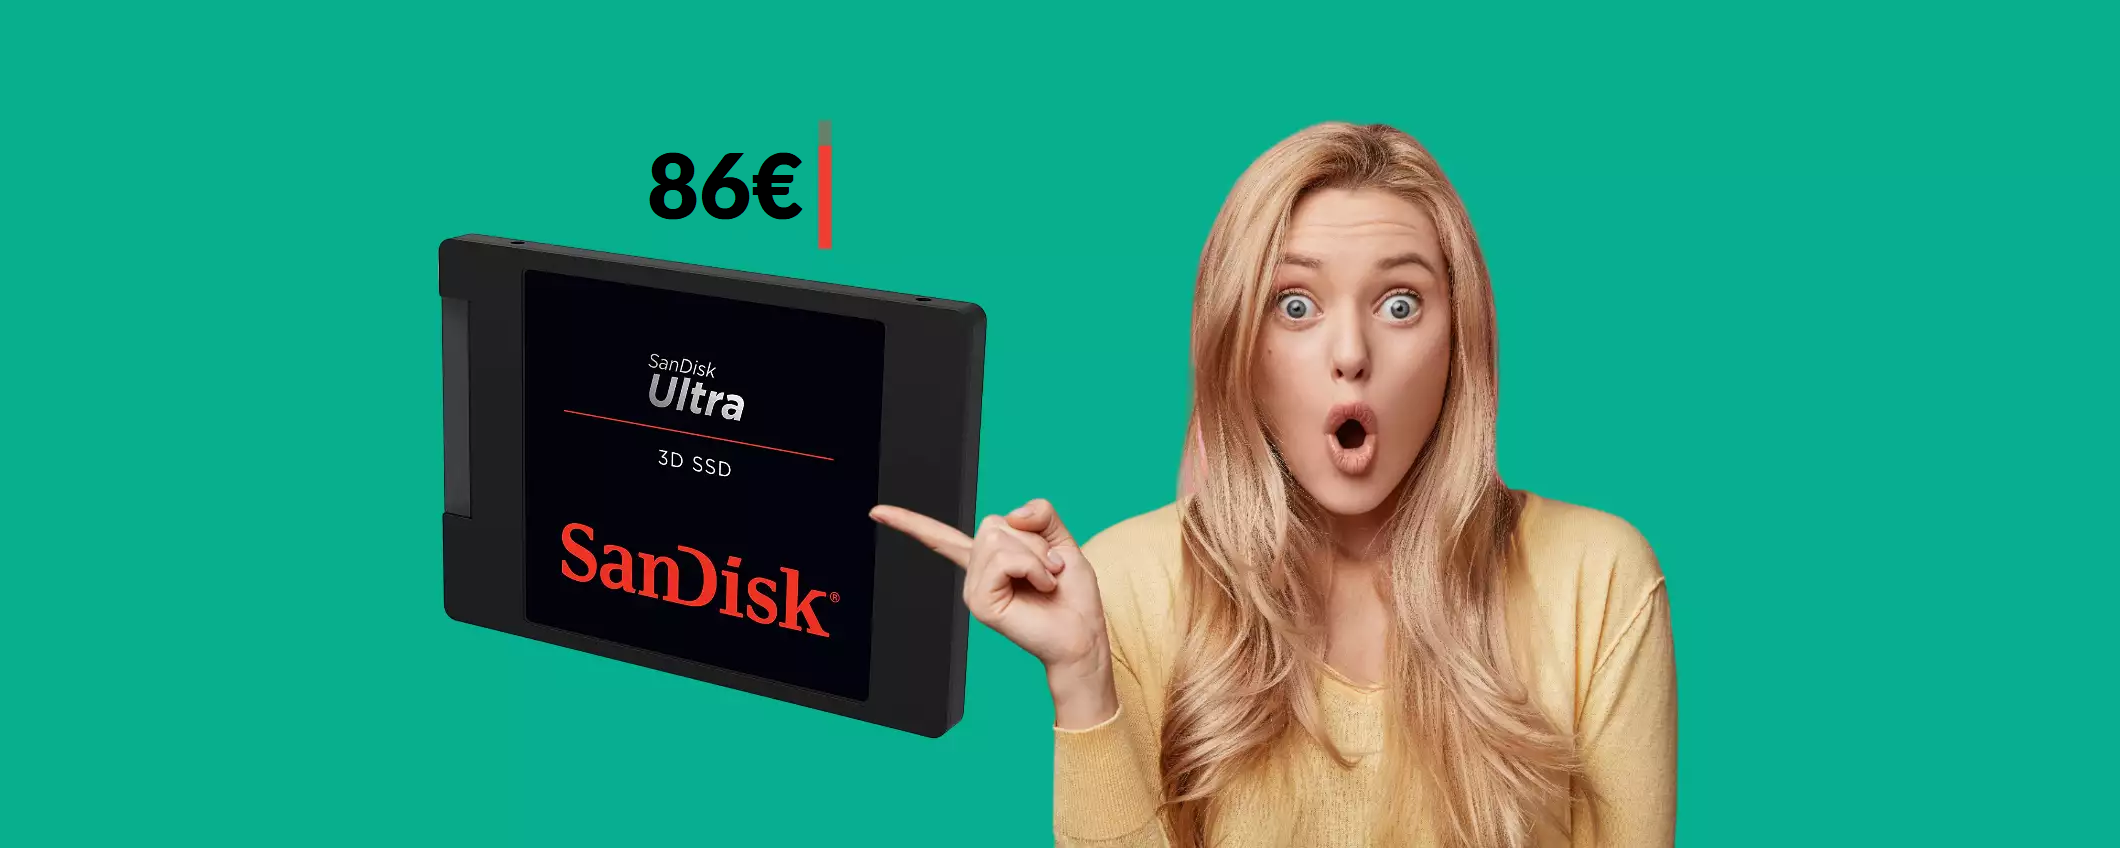 SSD SanDisk 1TB al prezzo più basso di sempre: già tuo con 86€